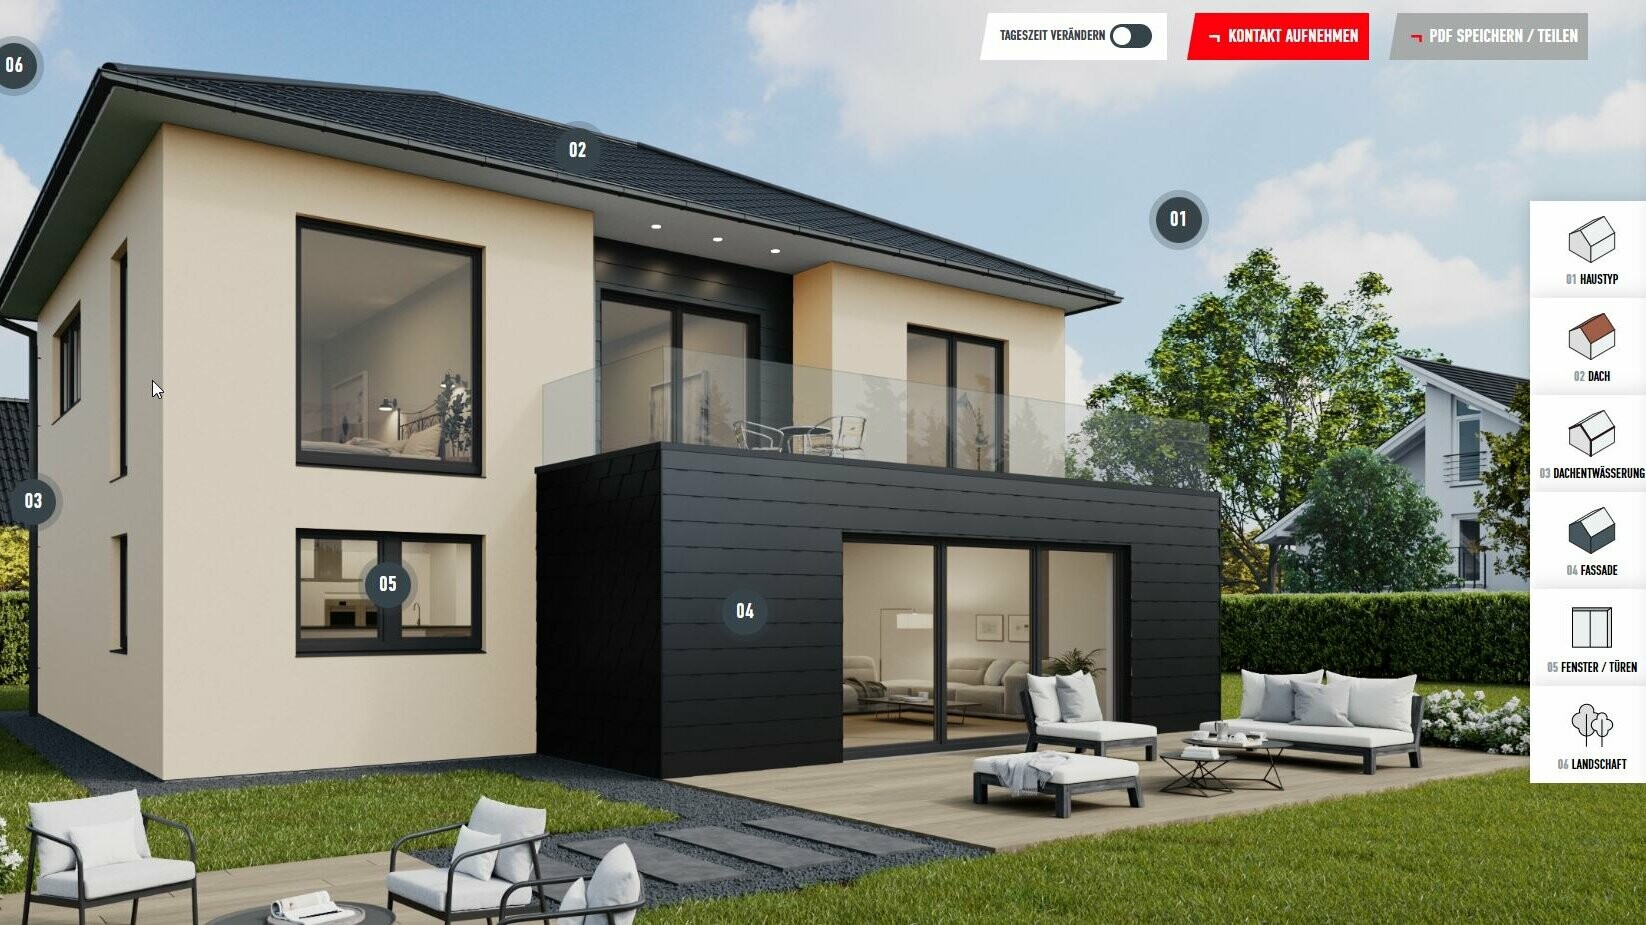 Príklad náhľadu konfigurácie rodinného domu s valbovou strechou obloženou strešnými šablónami PREFA 29 × 29 vo farbe P.10 čierna a fasádnymi šindľami. Dom je zasadený do obytnej oblasti predmestia.